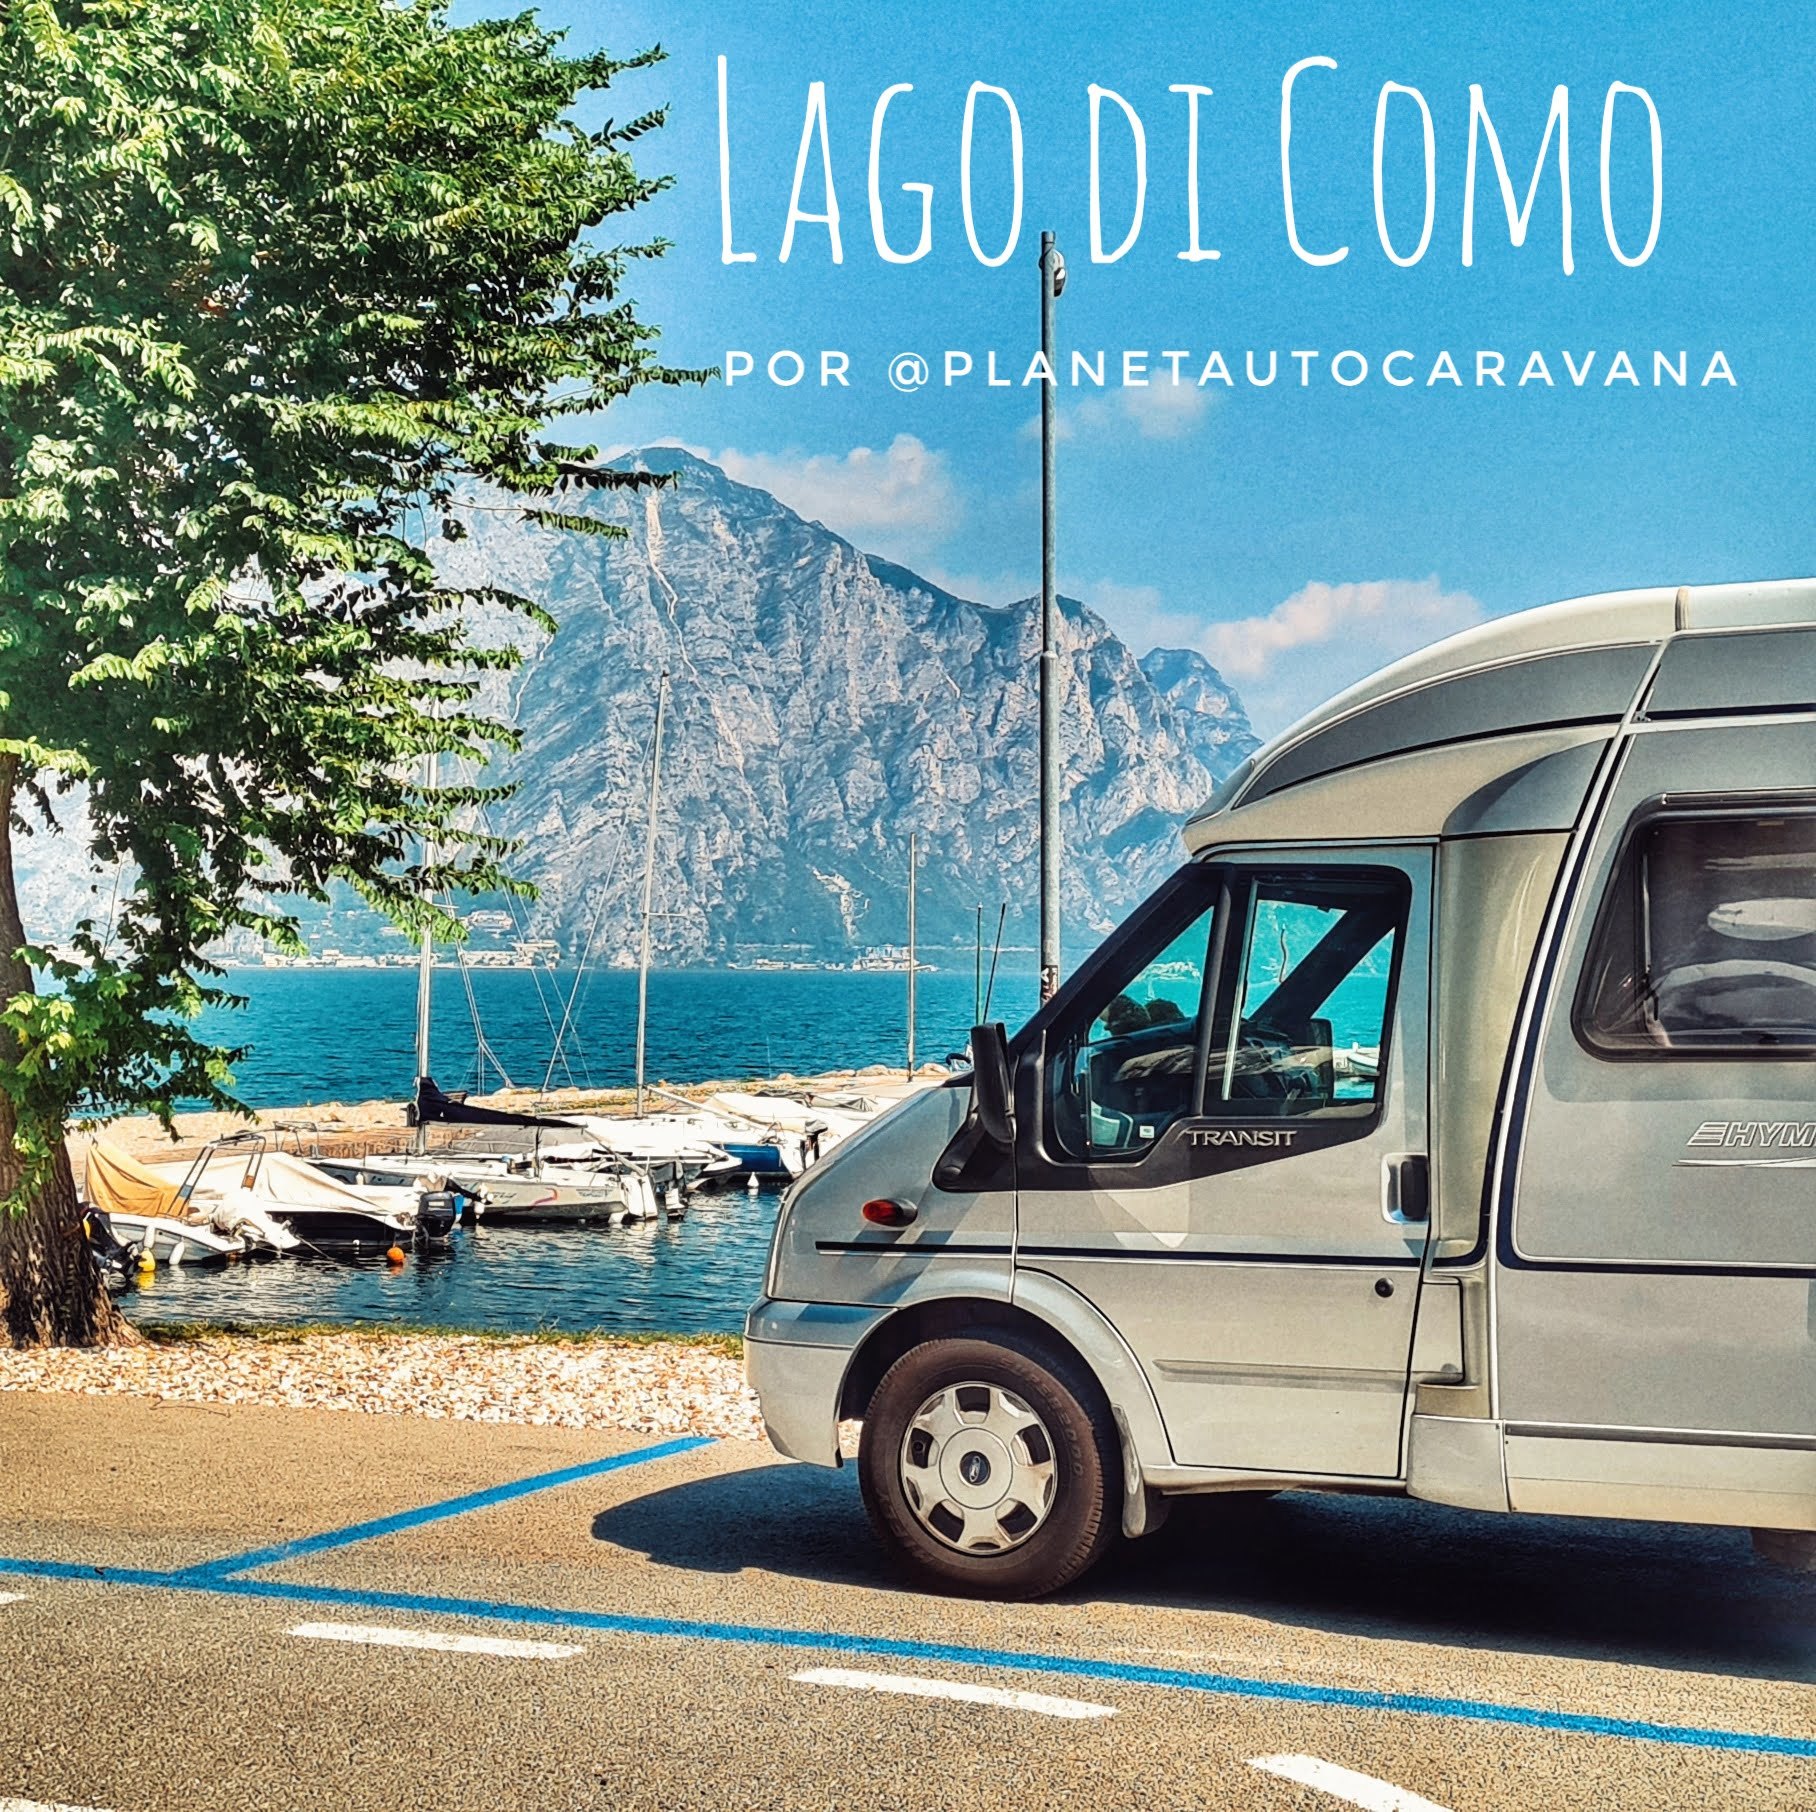 En este momento estás viendo Lago di Garda en autocaravana o furgo por los youtubers PlanetAutocaravana